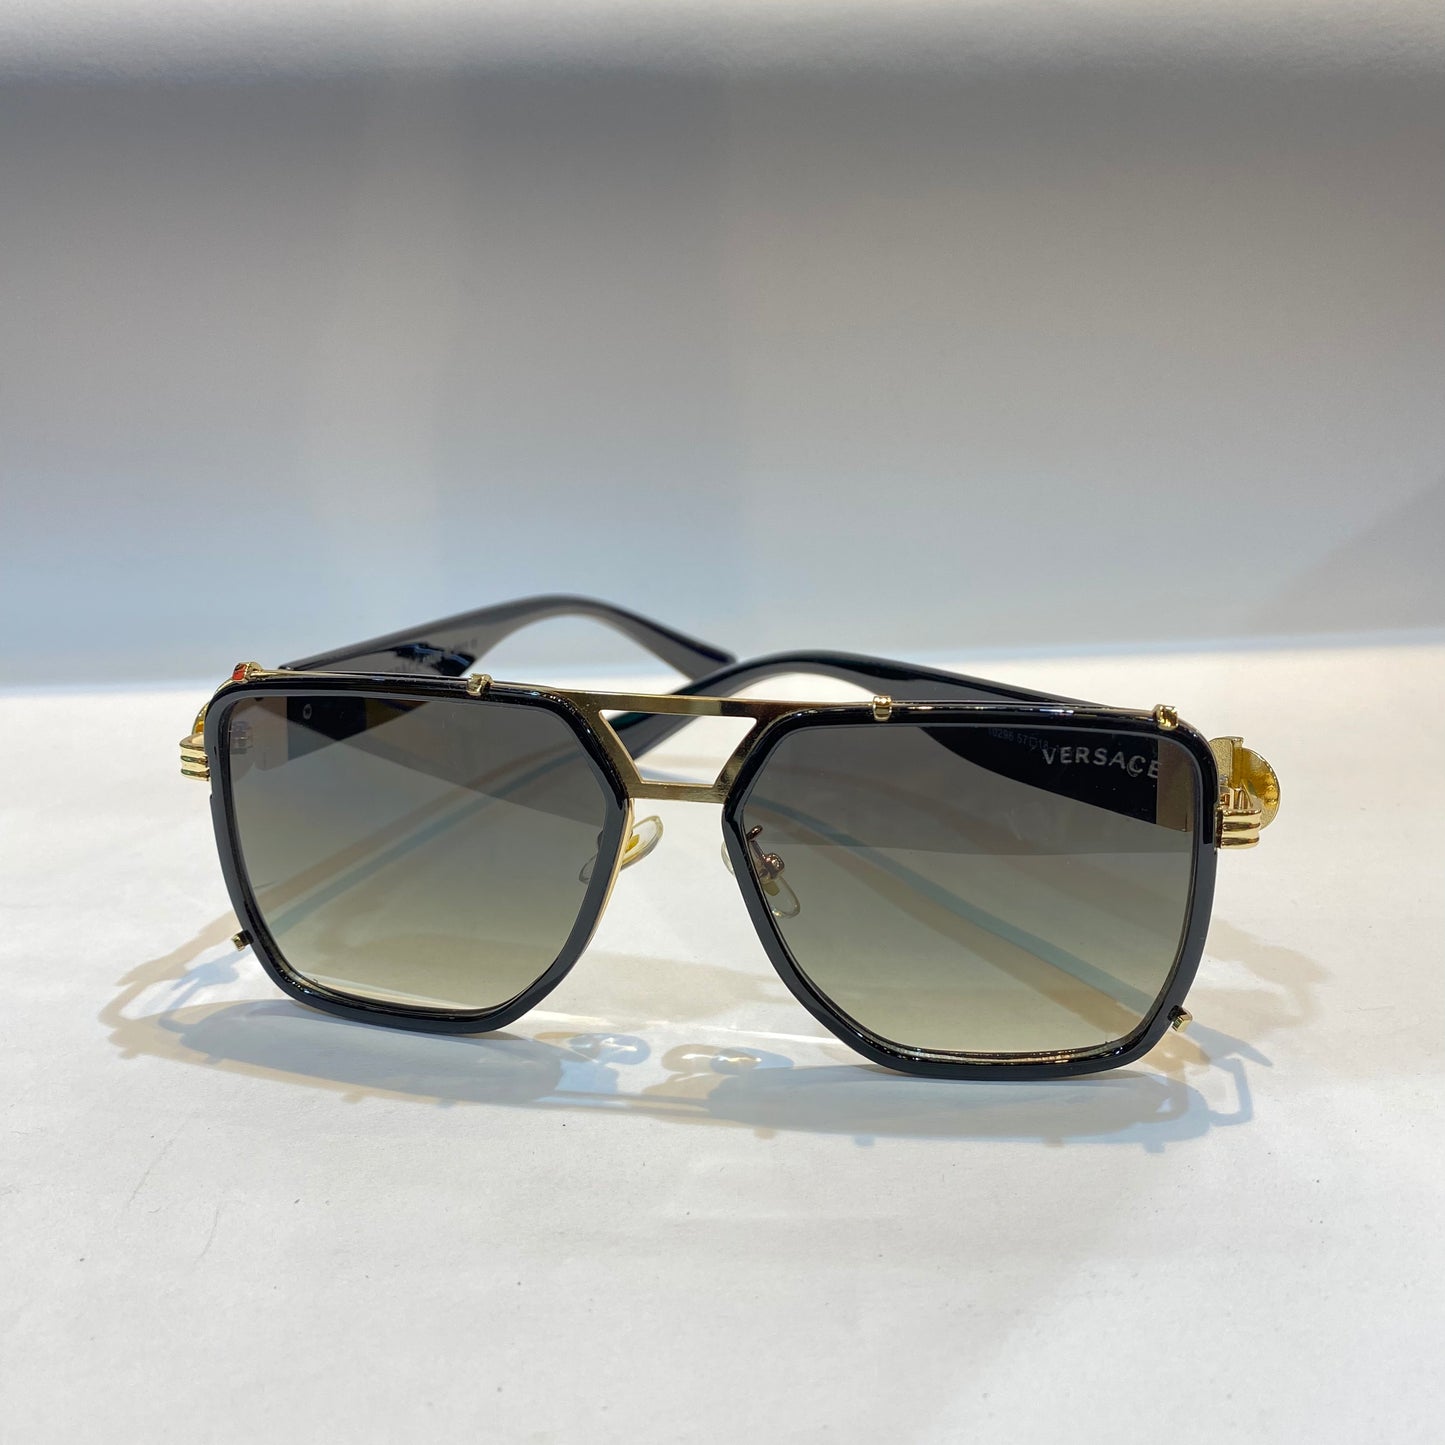 REV Gold Frame Green Shade Unisex Branded Sunglasses 10296 57 18-145